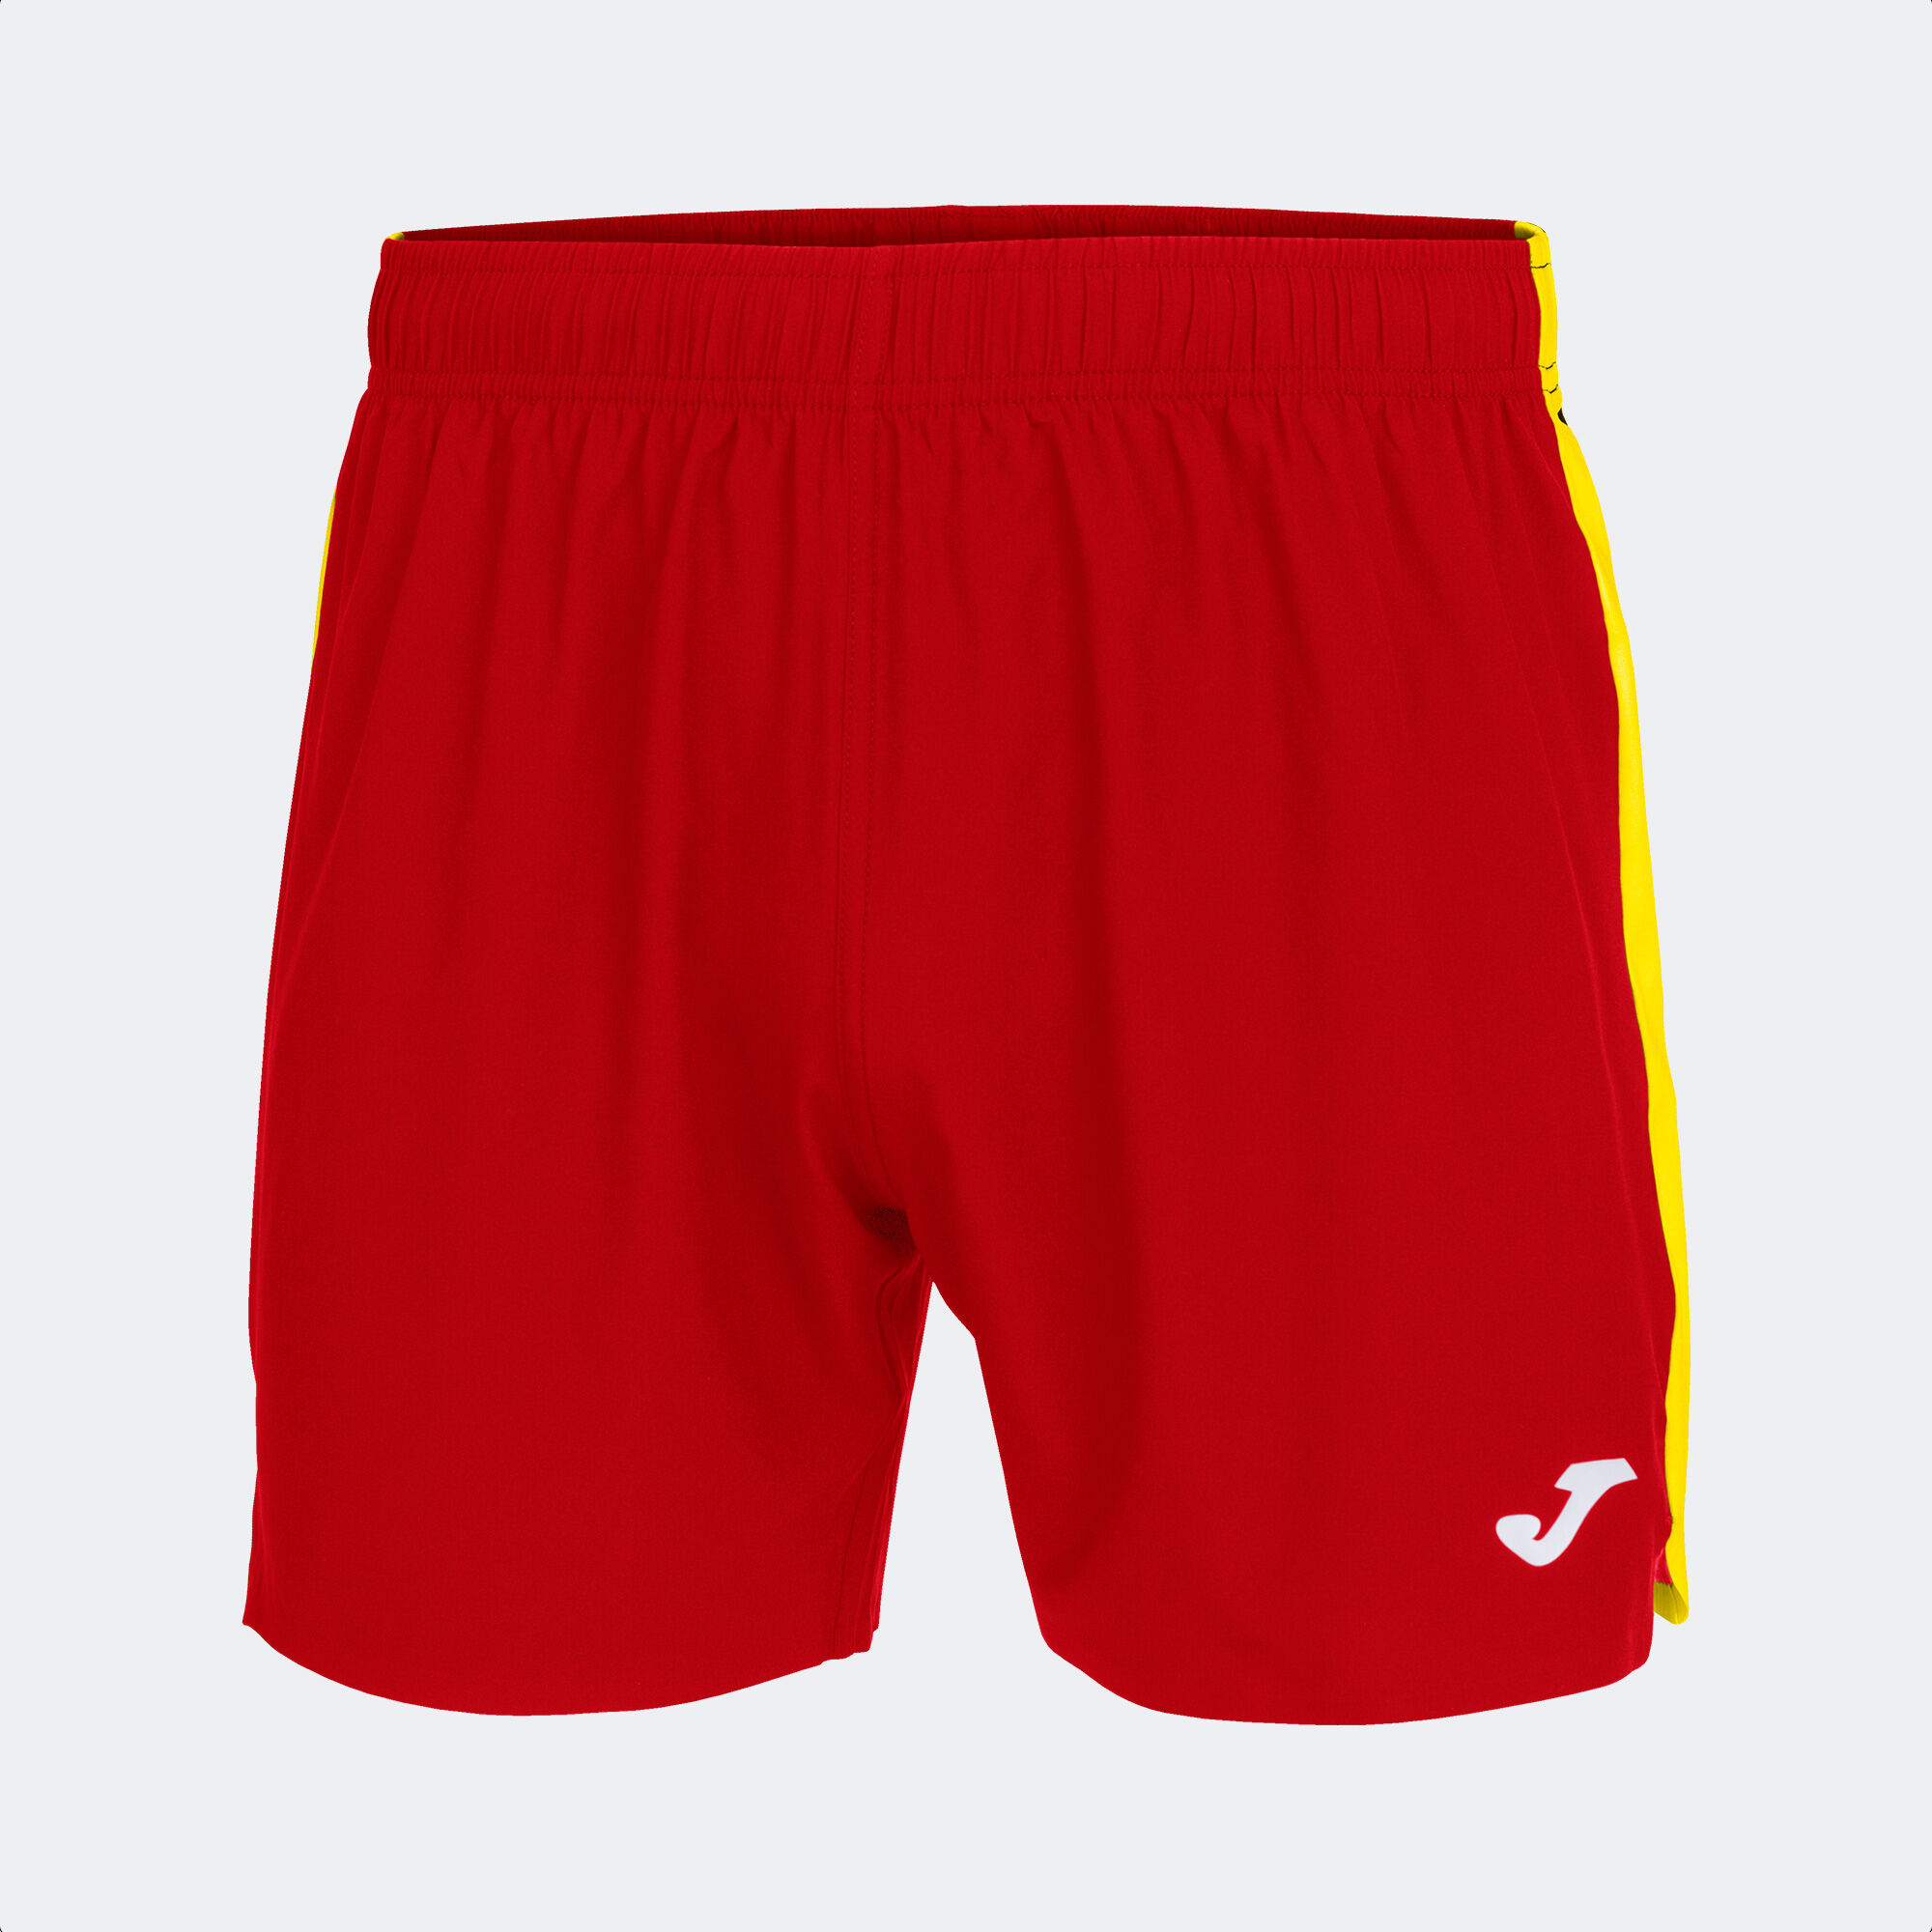 Shorts man Elite VII red yellow